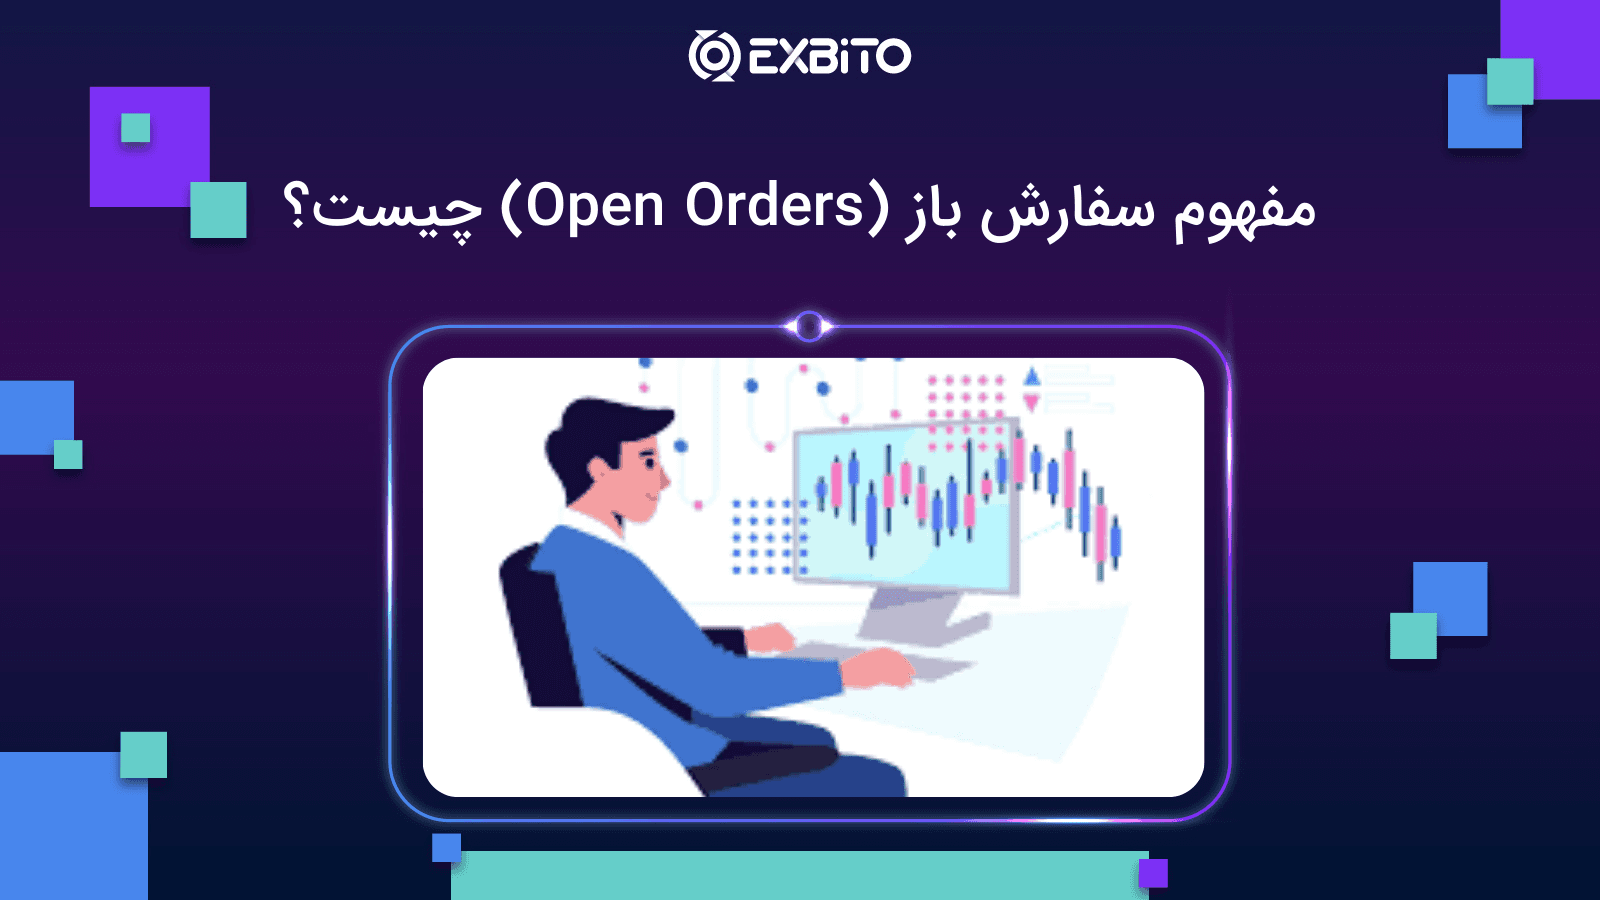 مفهوم سفارش باز (Open Orders) چیست؟